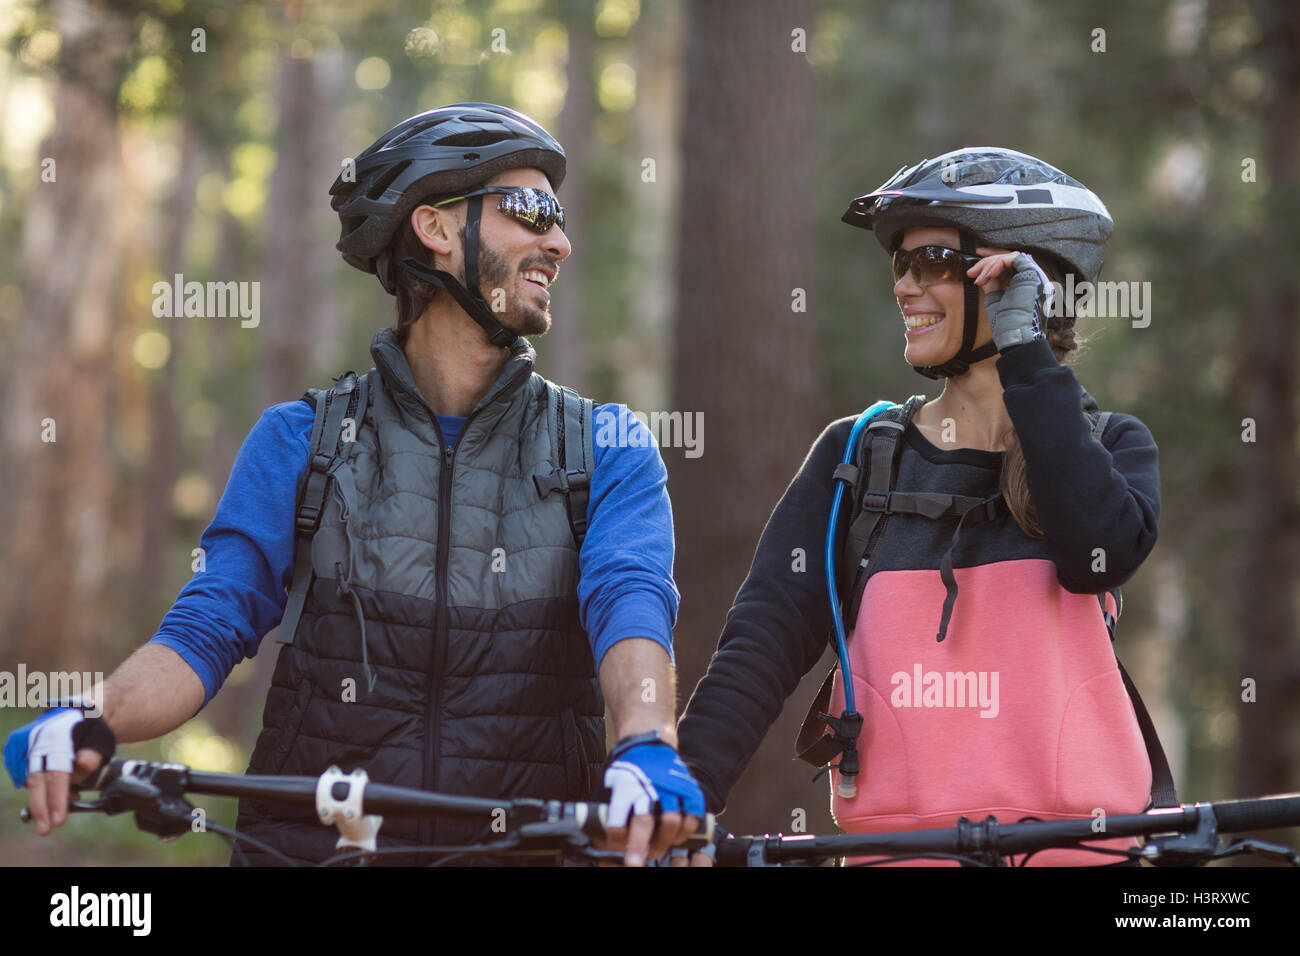 Fondos de Pantalla Manillar Dos Niñas Casco Gafas Guante Bicicleta